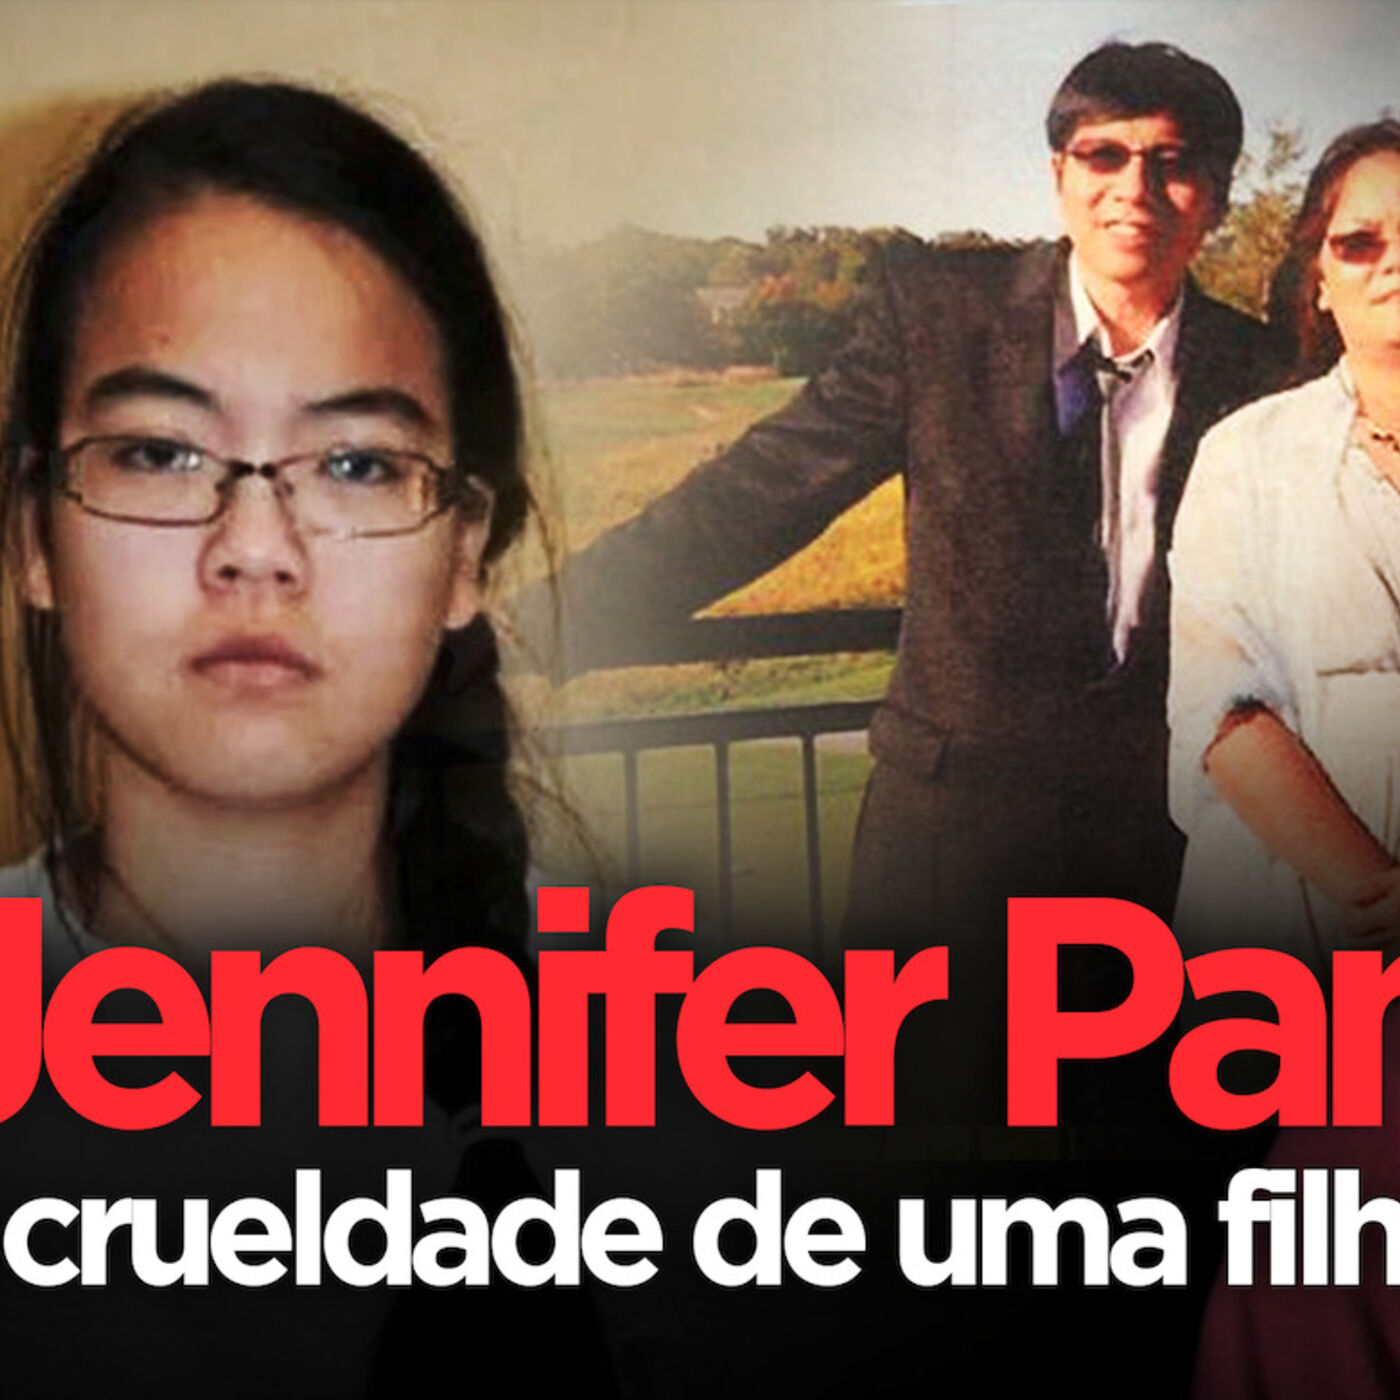 A filha que ninguém queria ter: Jennifer Pan